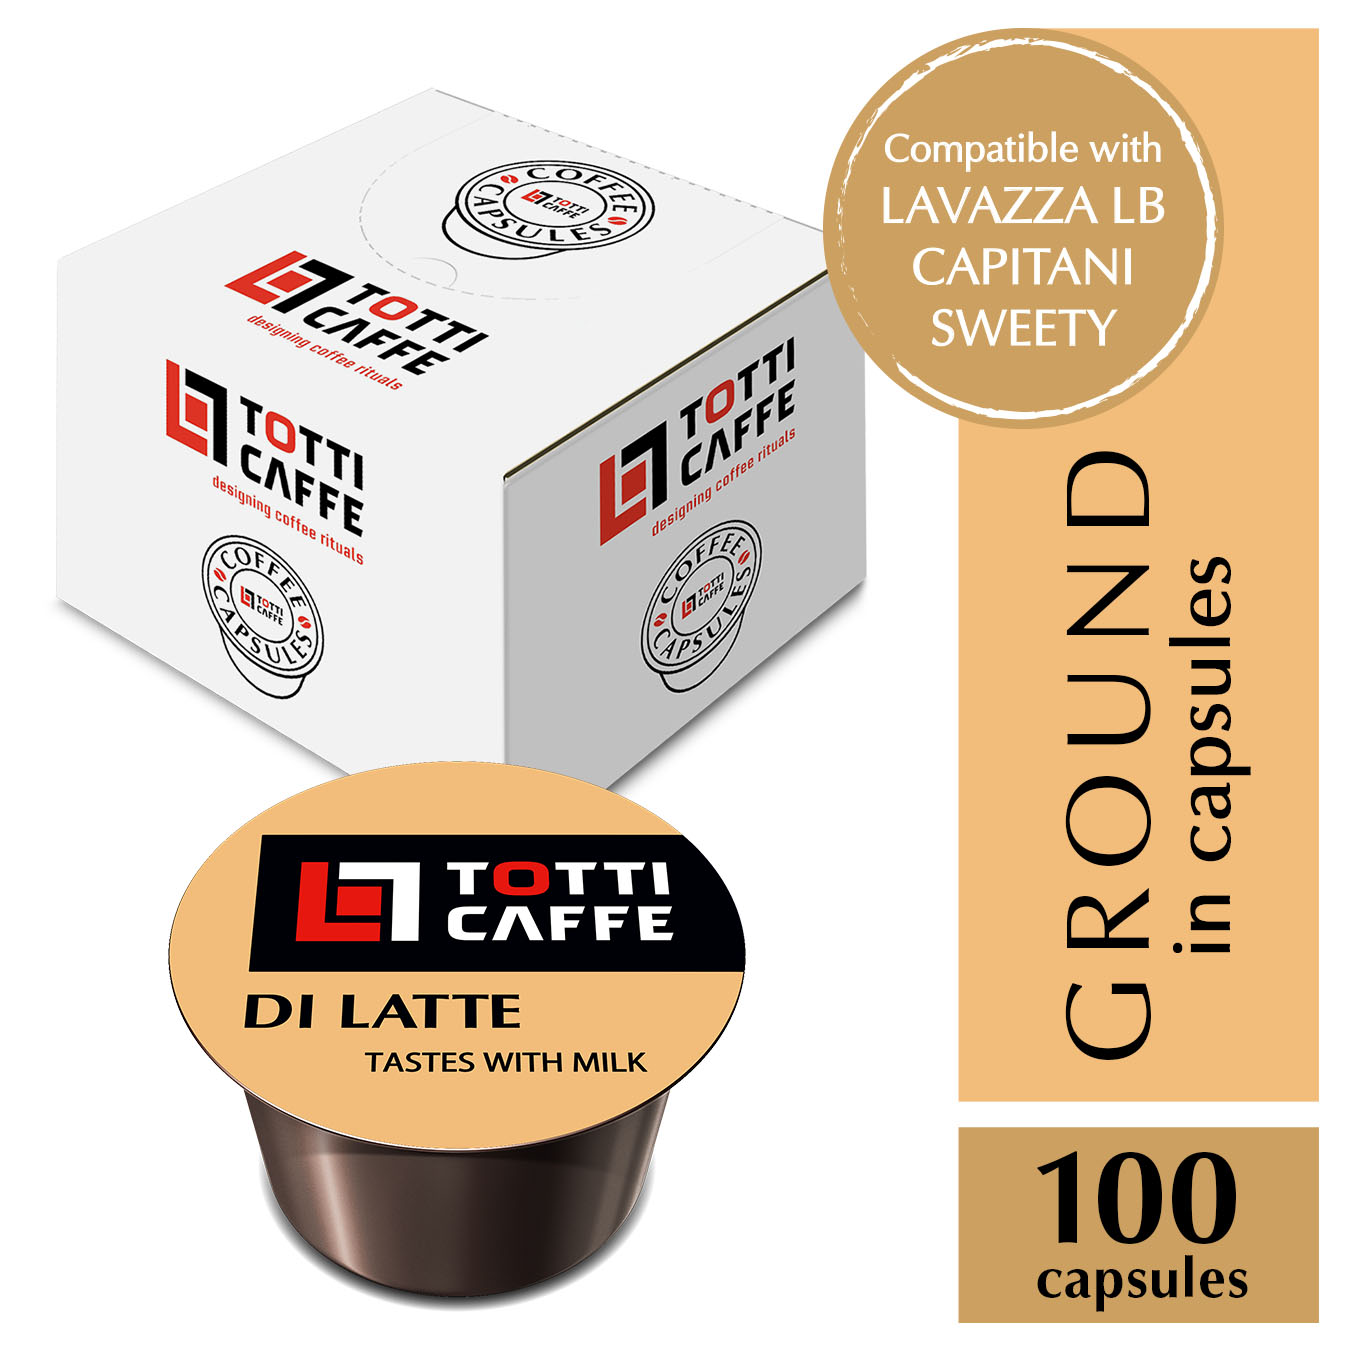 CAPSULE TOTTI CAFFE Di LATTE